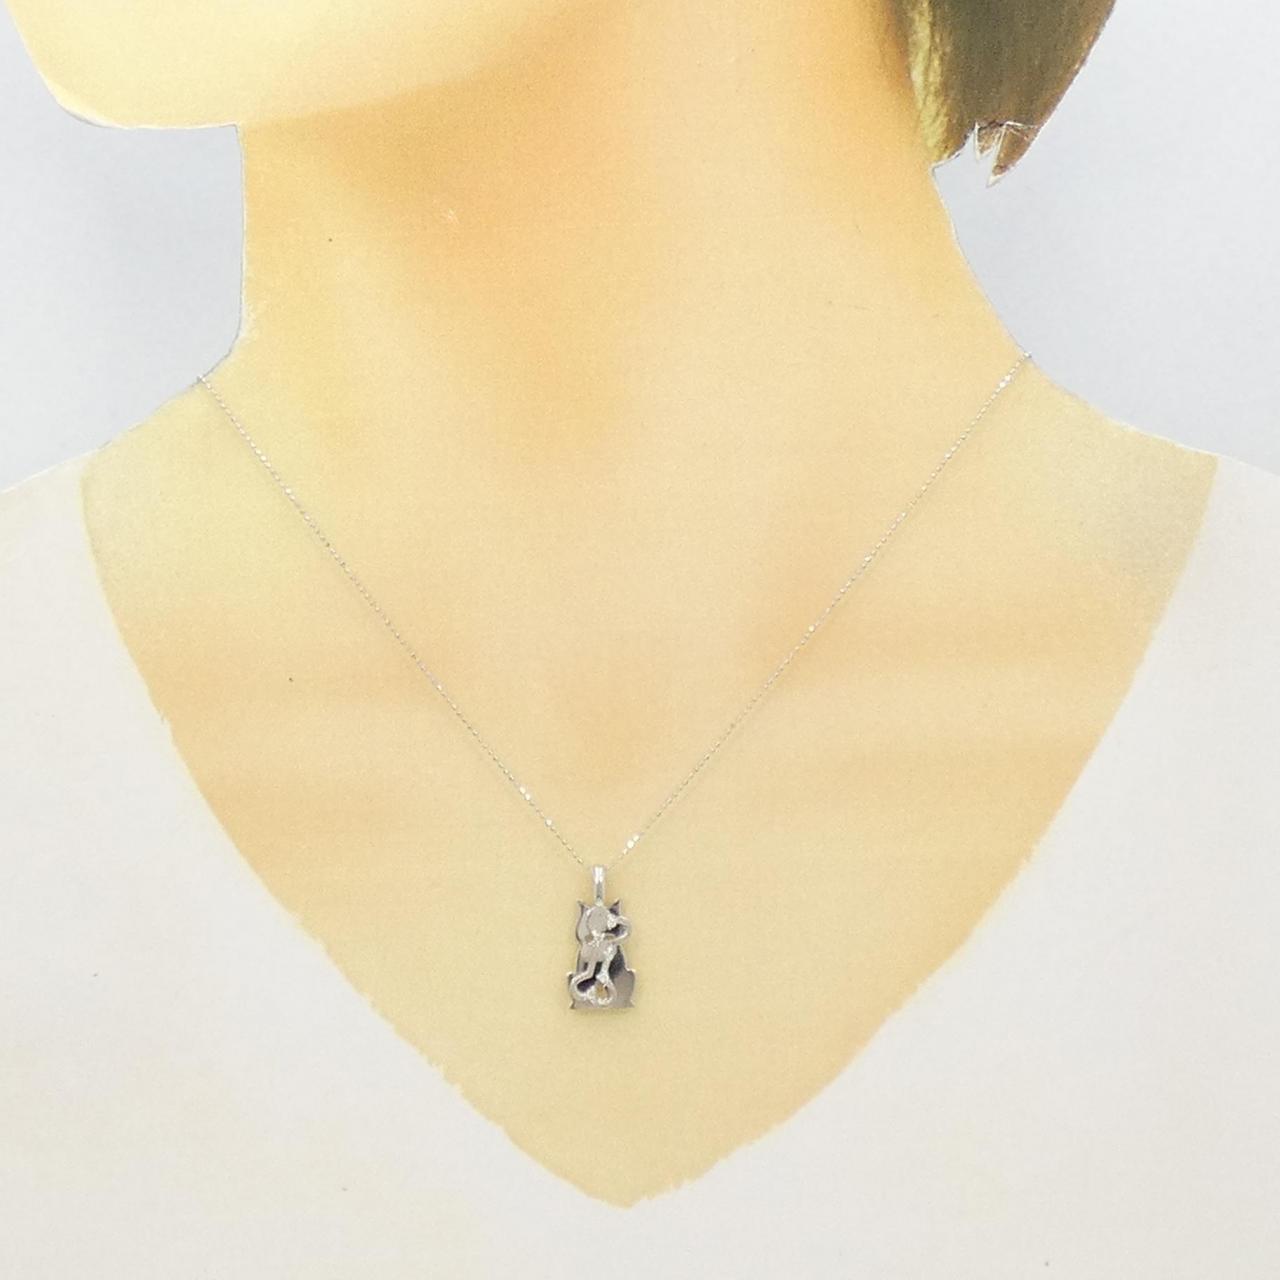 ネックレス美品 K18WG ホワイトゴールド ネックレス ダイヤ 0.40ct 【1-0118834】